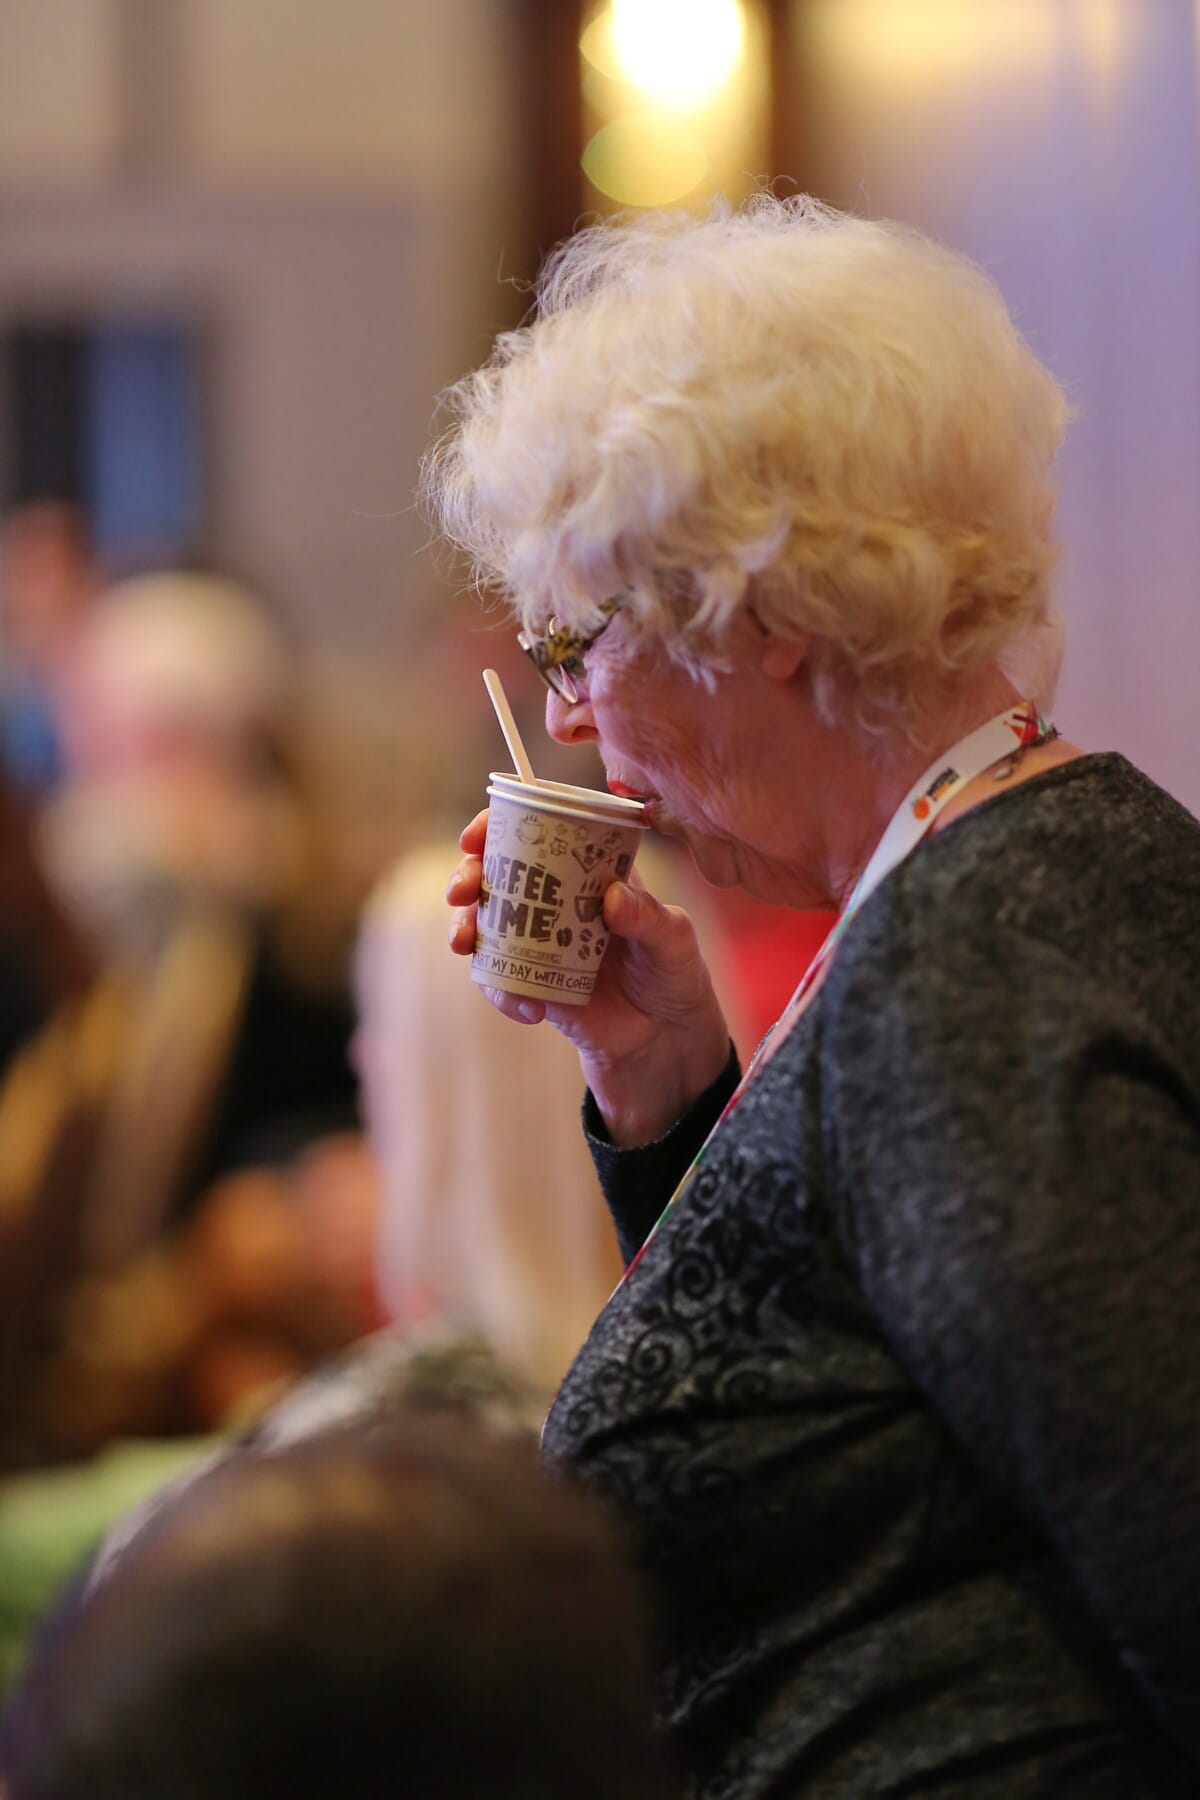 vanha nainen, Granny, juominen, kahvikuppi, kahvi, ihmiset, nainen, muotokuva, juoma, sisätiloissa